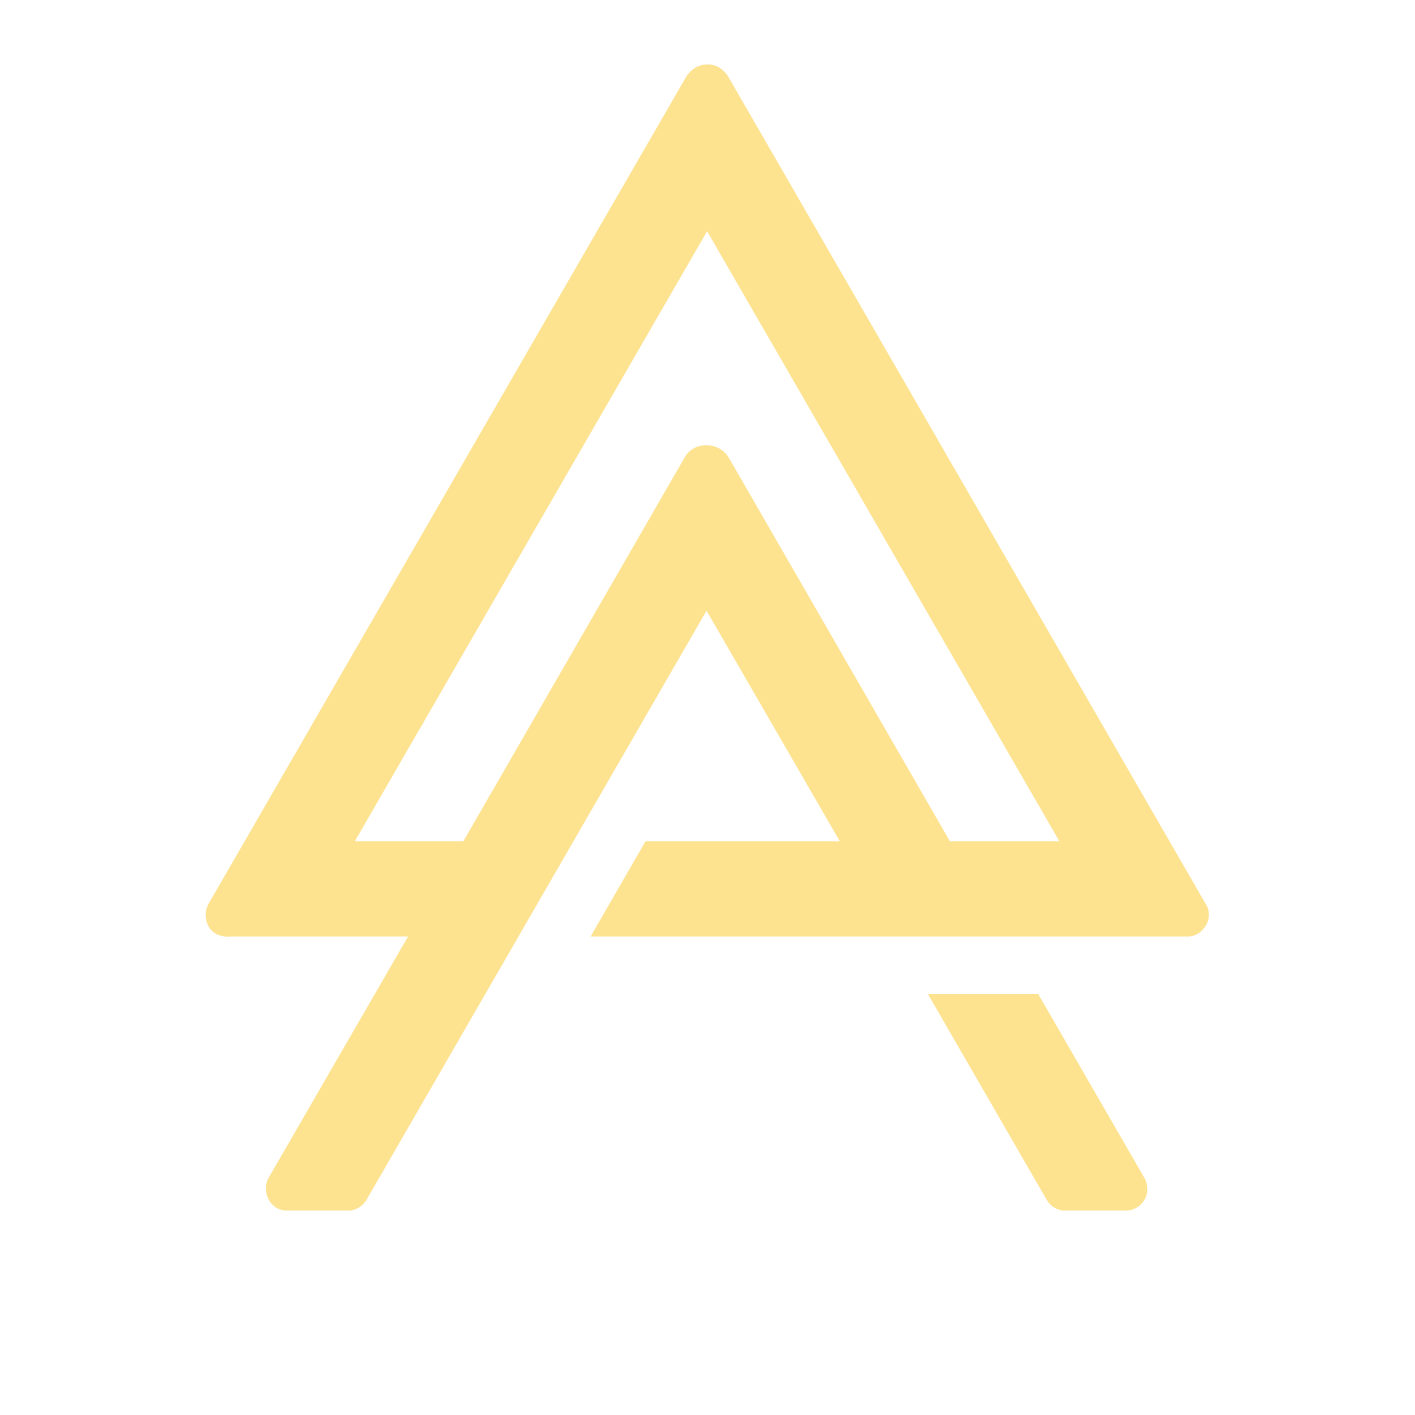 AX yellow icon